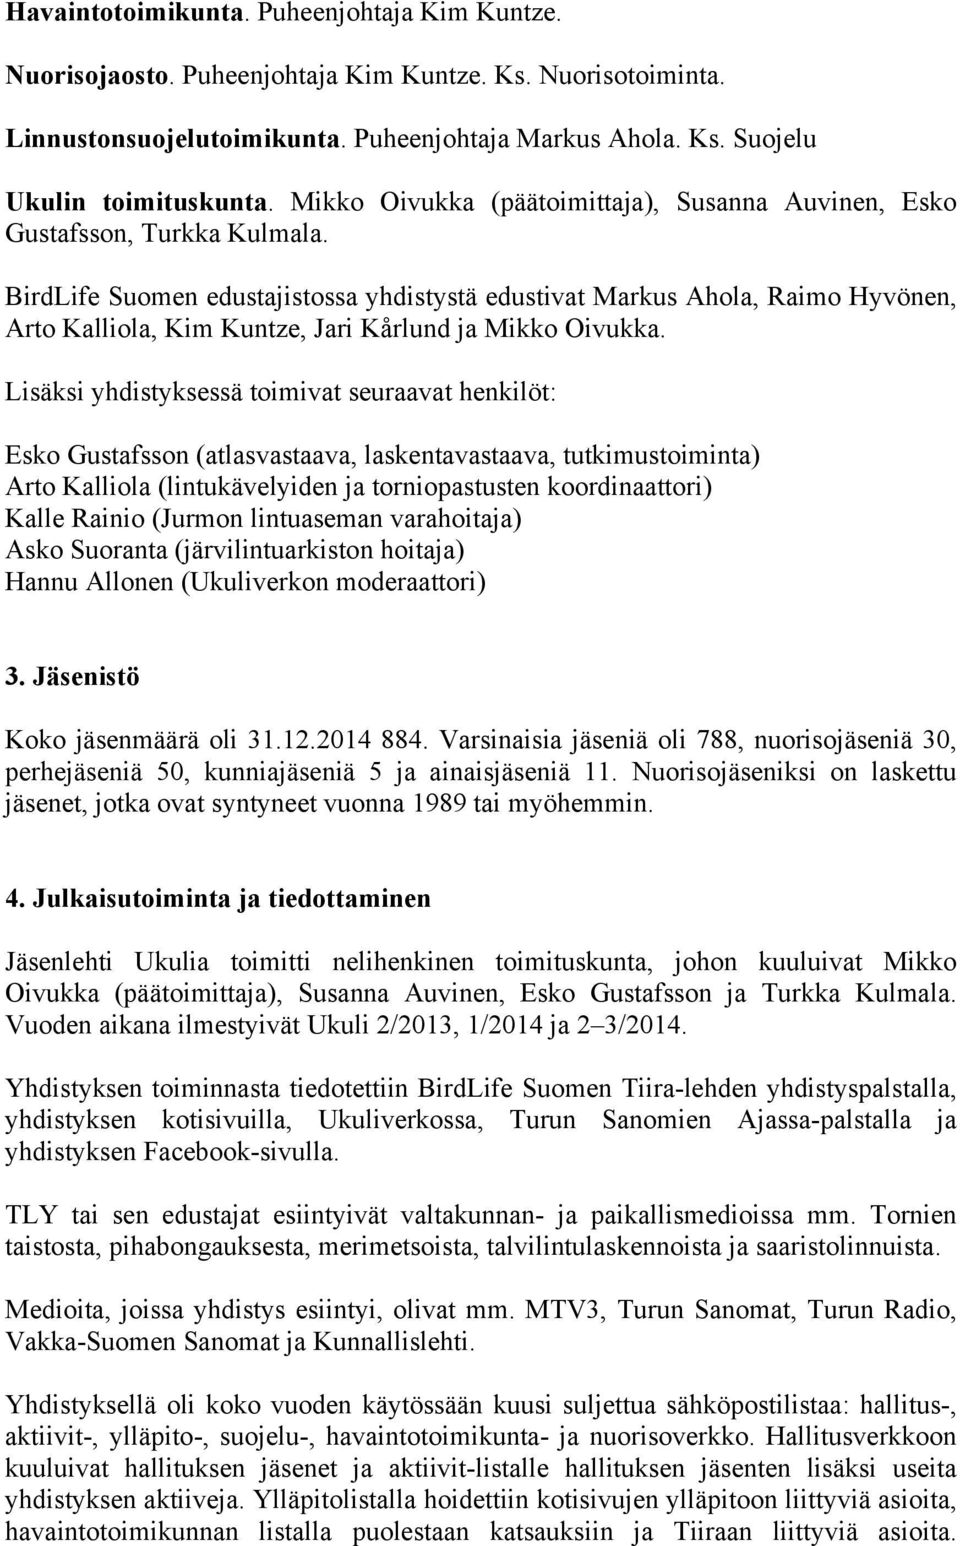 BirdLife Suomen edustajistossa yhdistystä edustivat Markus Ahola, Raimo Hyvönen, Arto Kalliola, Kim Kuntze, Jari Kårlund ja Mikko Oivukka.